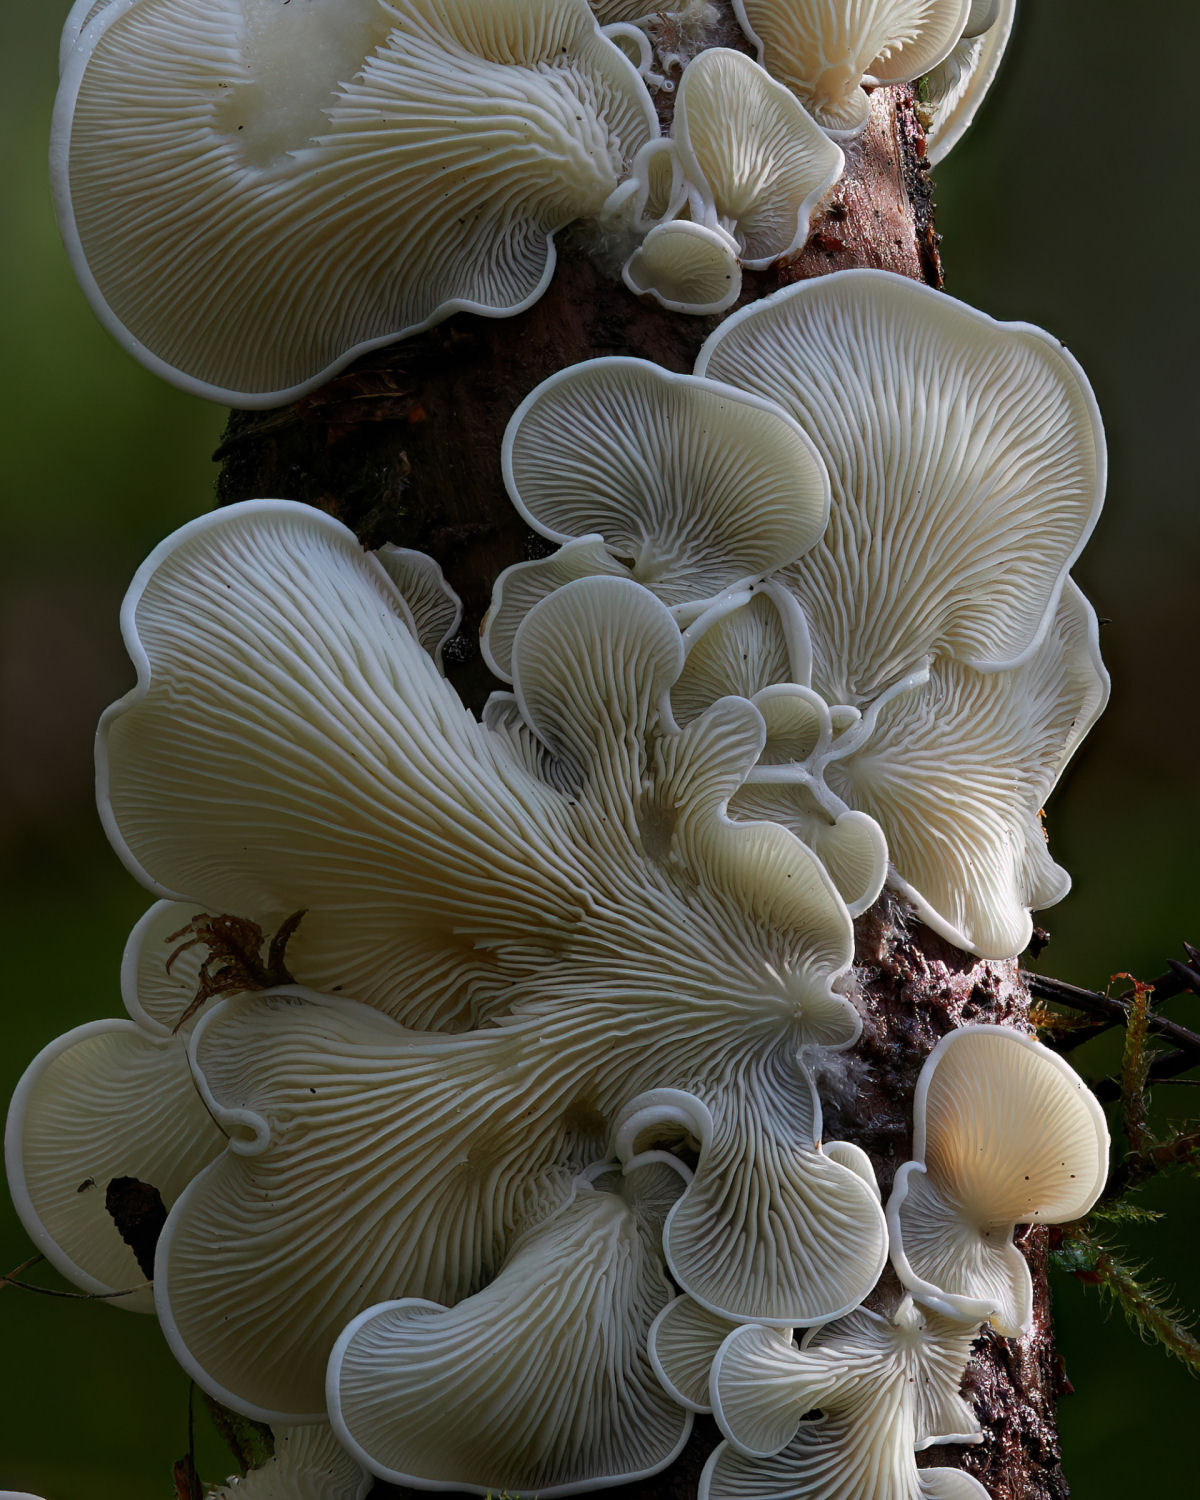 Macrofotografias mostram a espantosa biodiversidade dos fungos 09